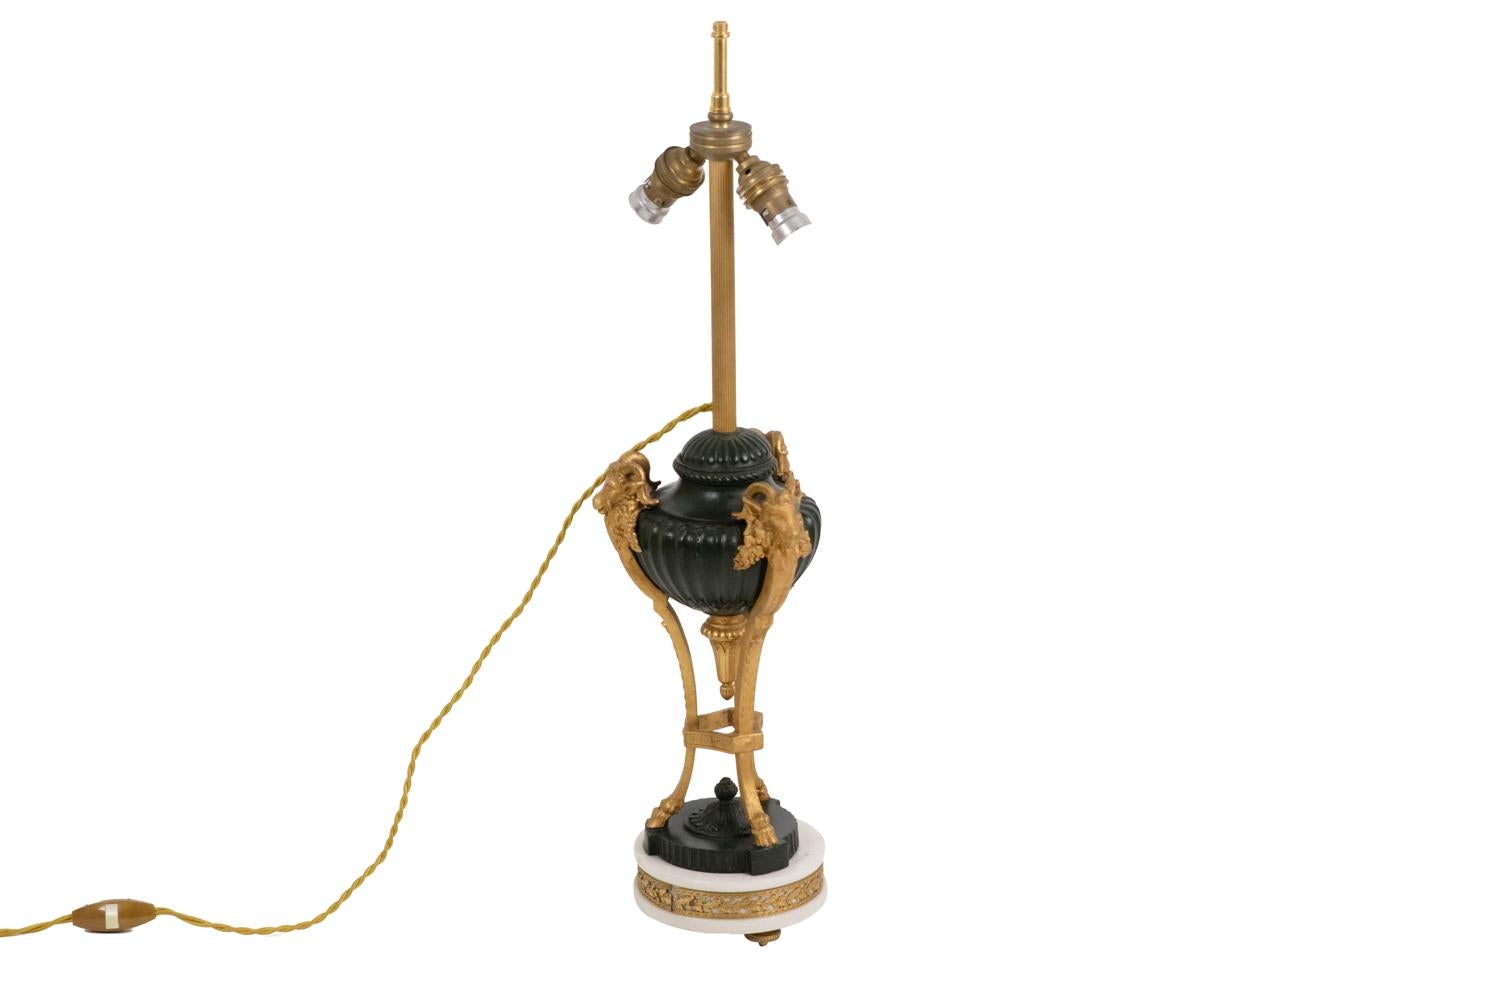 Lampe de style Empire en bronze à deux patines en forme de cassolette décorée de godrons et entourée de trois têtes de béliers terminées par des sabots. Cassolette surmontée d'une tige cannelée et terminée par une forme de tulipe décorée de feuilles